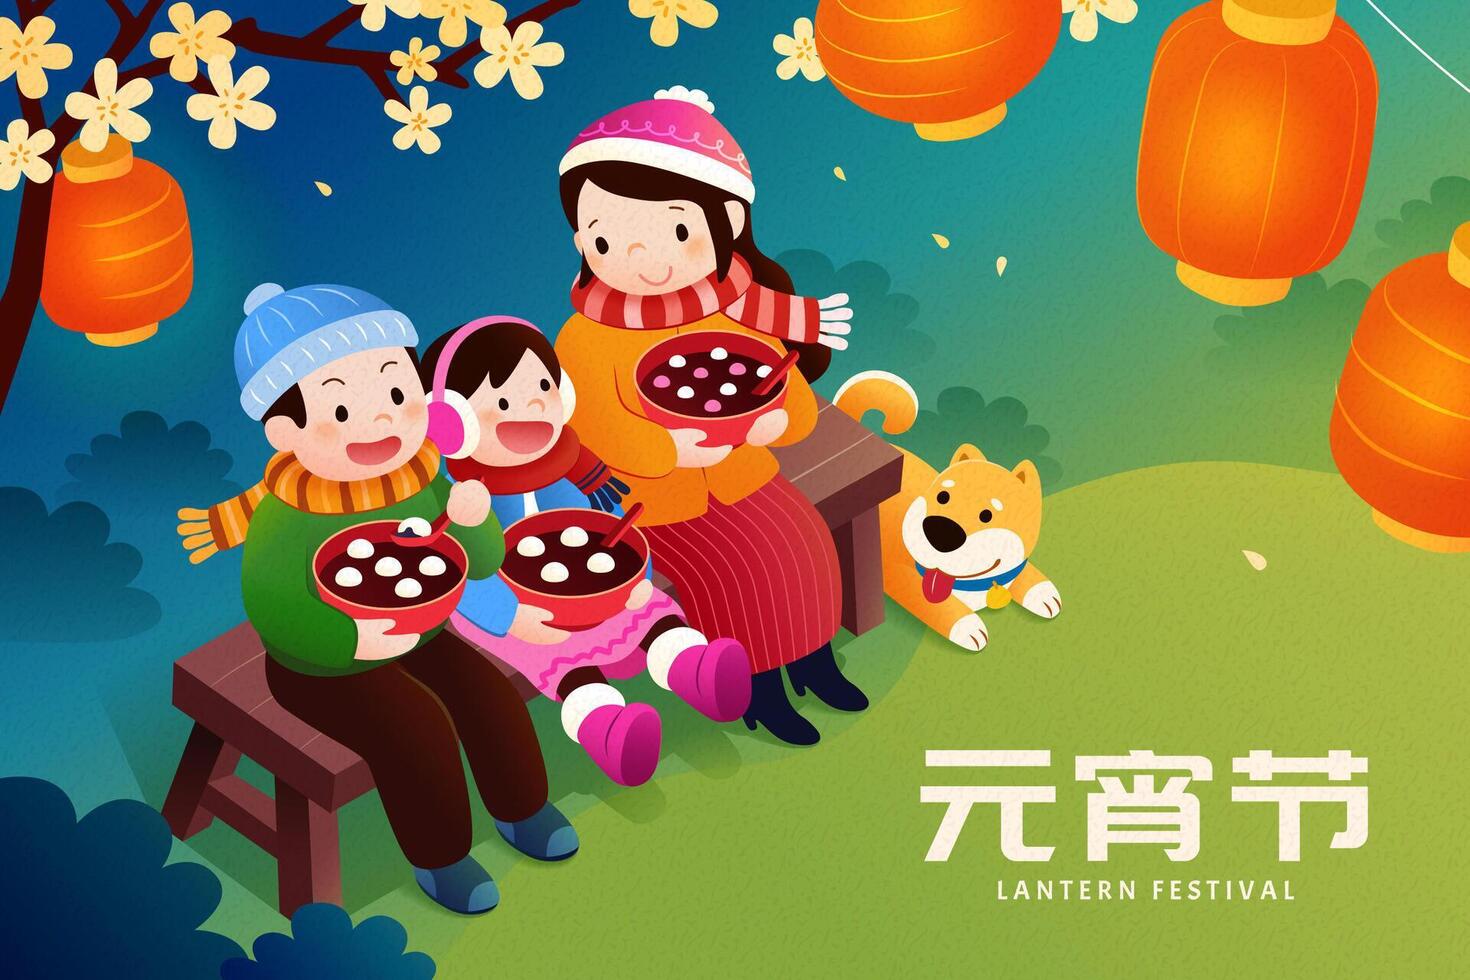 cny yuanxiao festival affisch. asiatisk familj njuter ljuv ris bollar och skön lykta scen. text översättning, lykta festival vektor